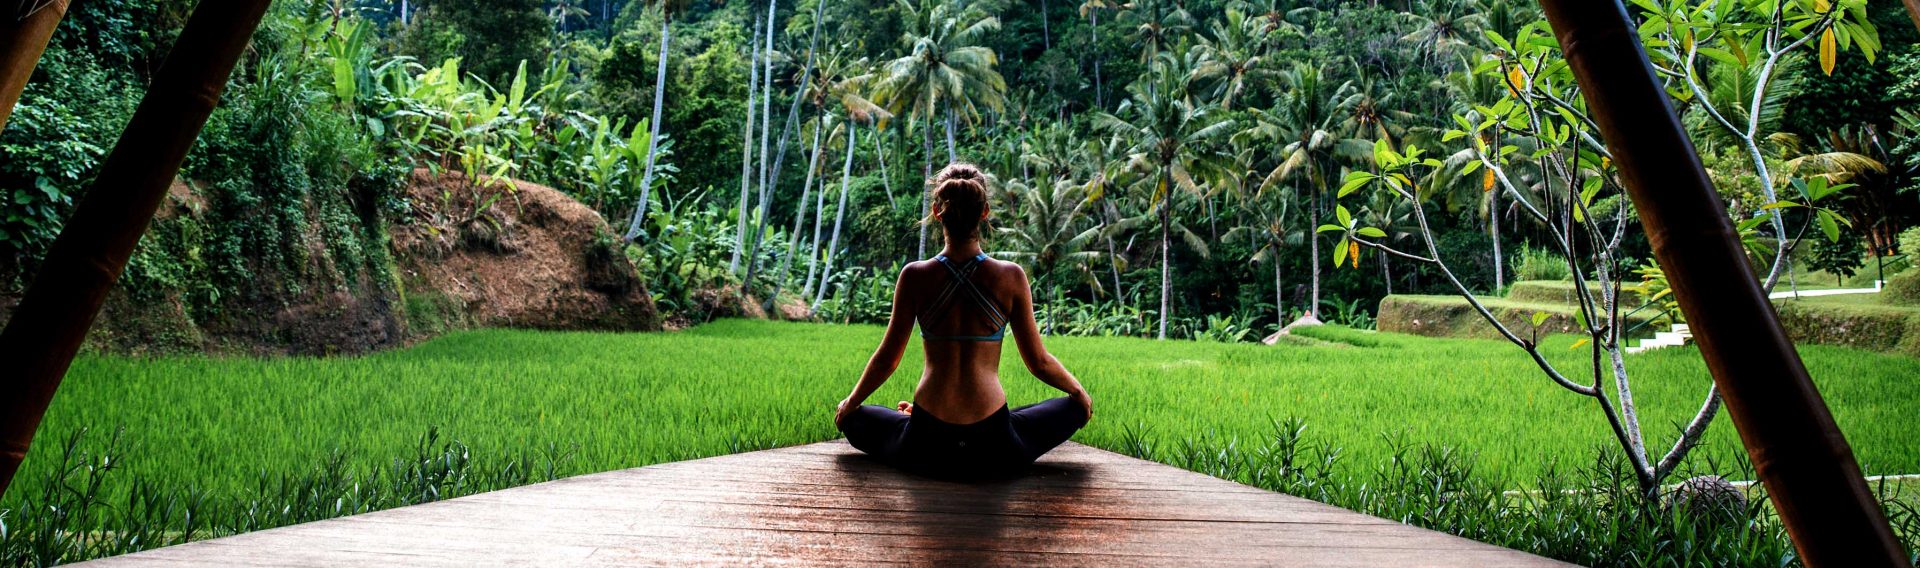 Connettersi alla natura con lo yoga all'aria aperta - Arredo ecologico -  Emporio è Natura